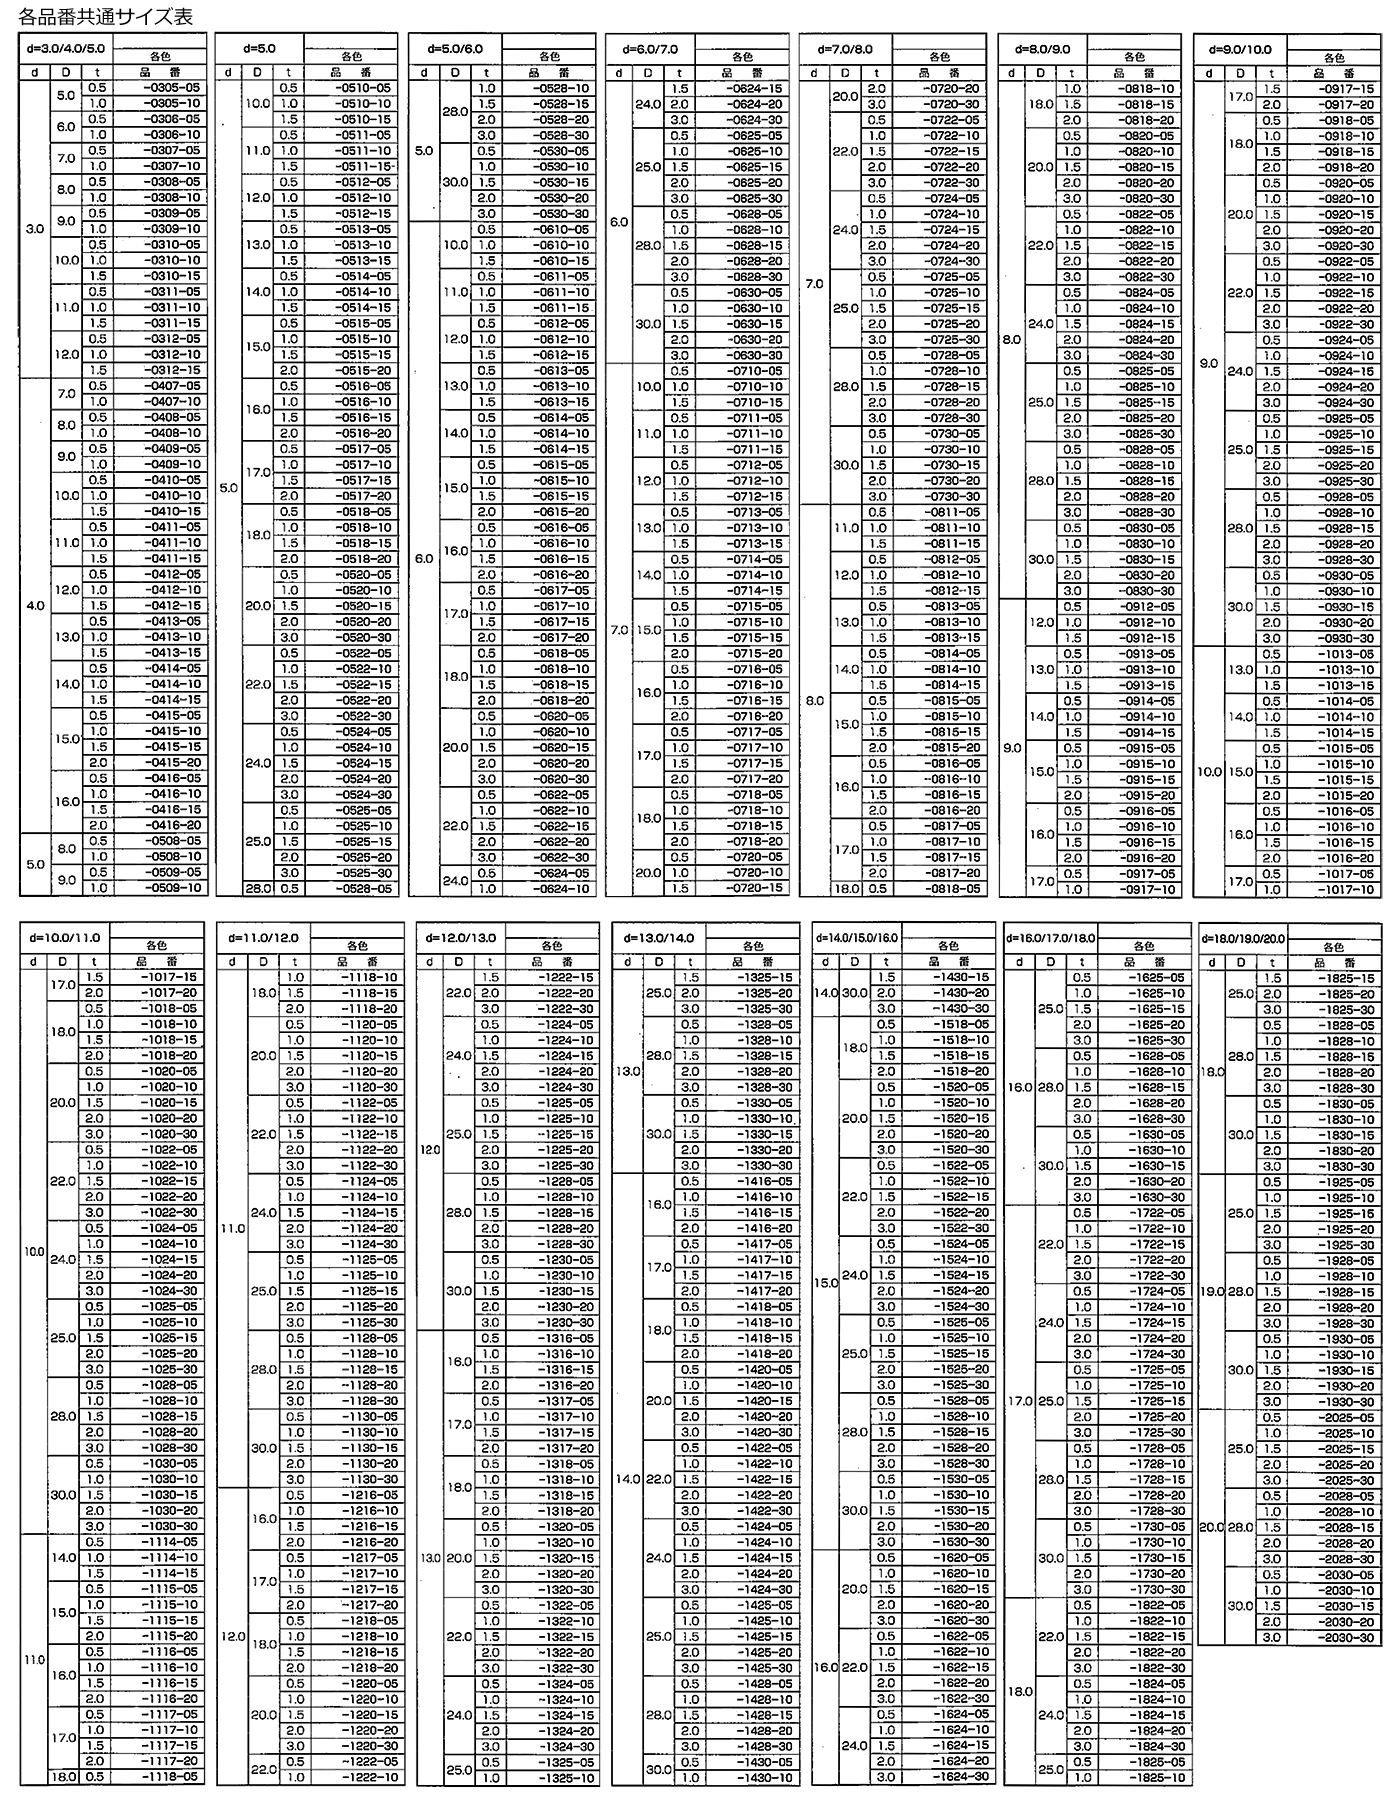 フッ素ゴム 丸型平座金 (丸ワッシャー) FLW-0000-00 (黒色)の寸法表